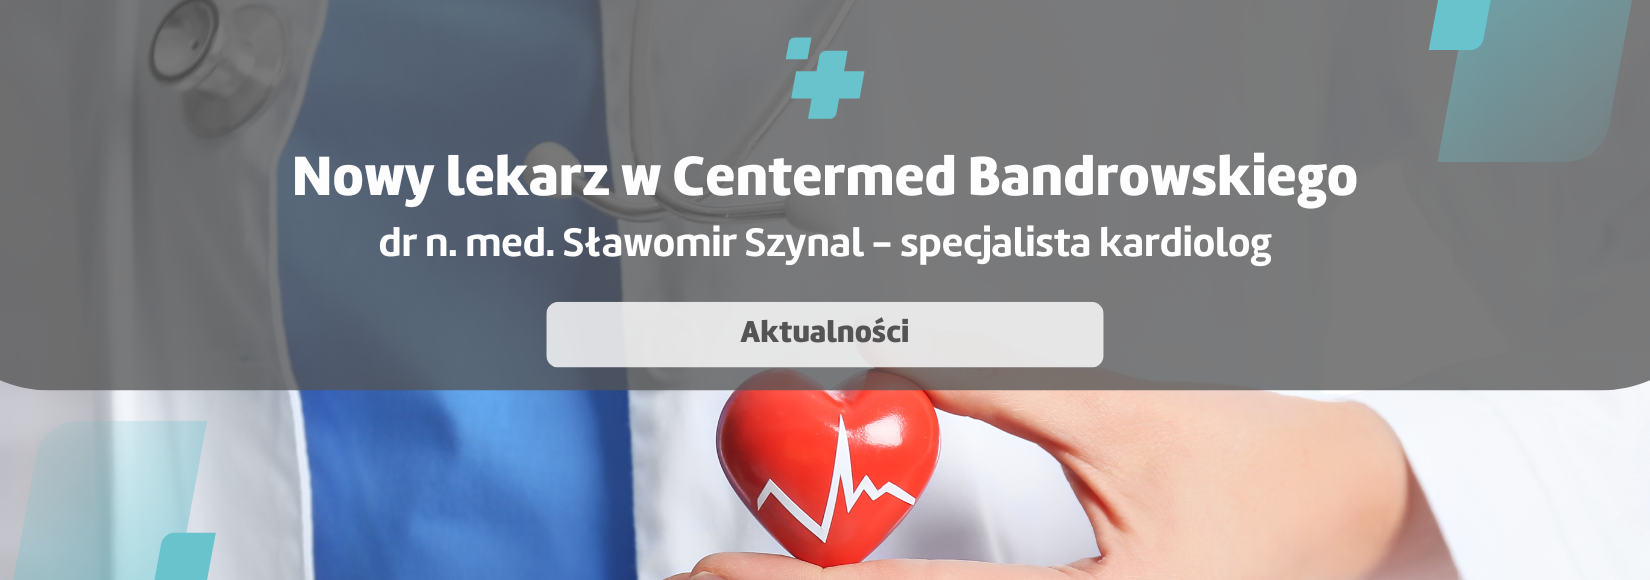 Nowy kardiolog w CenterMed Bandrowskiego - dr n. med. Sławomir Szynal 